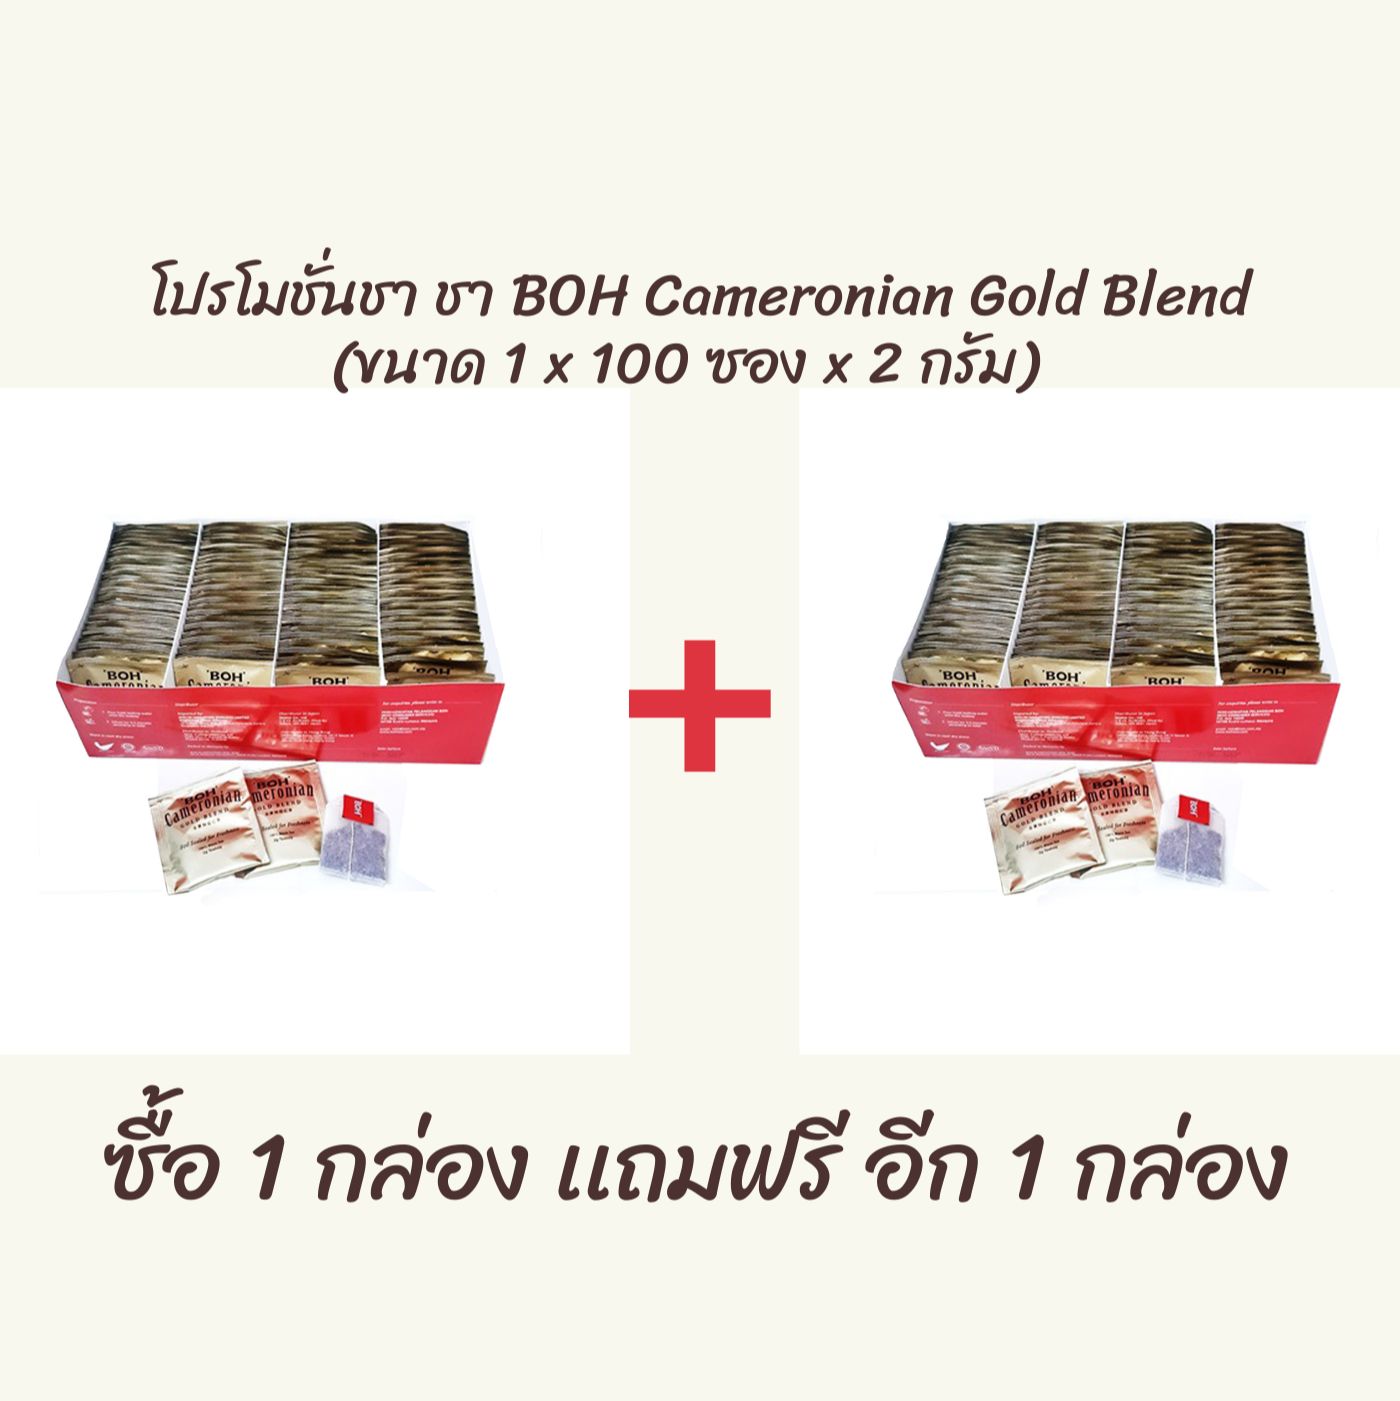 ชา BOH Cameronian Gold Blend (ขนาด 1 x 100 ซอง x 2 กรัม) 1 เเถม 1 วันหมดอายุ EXP 02/12/2022